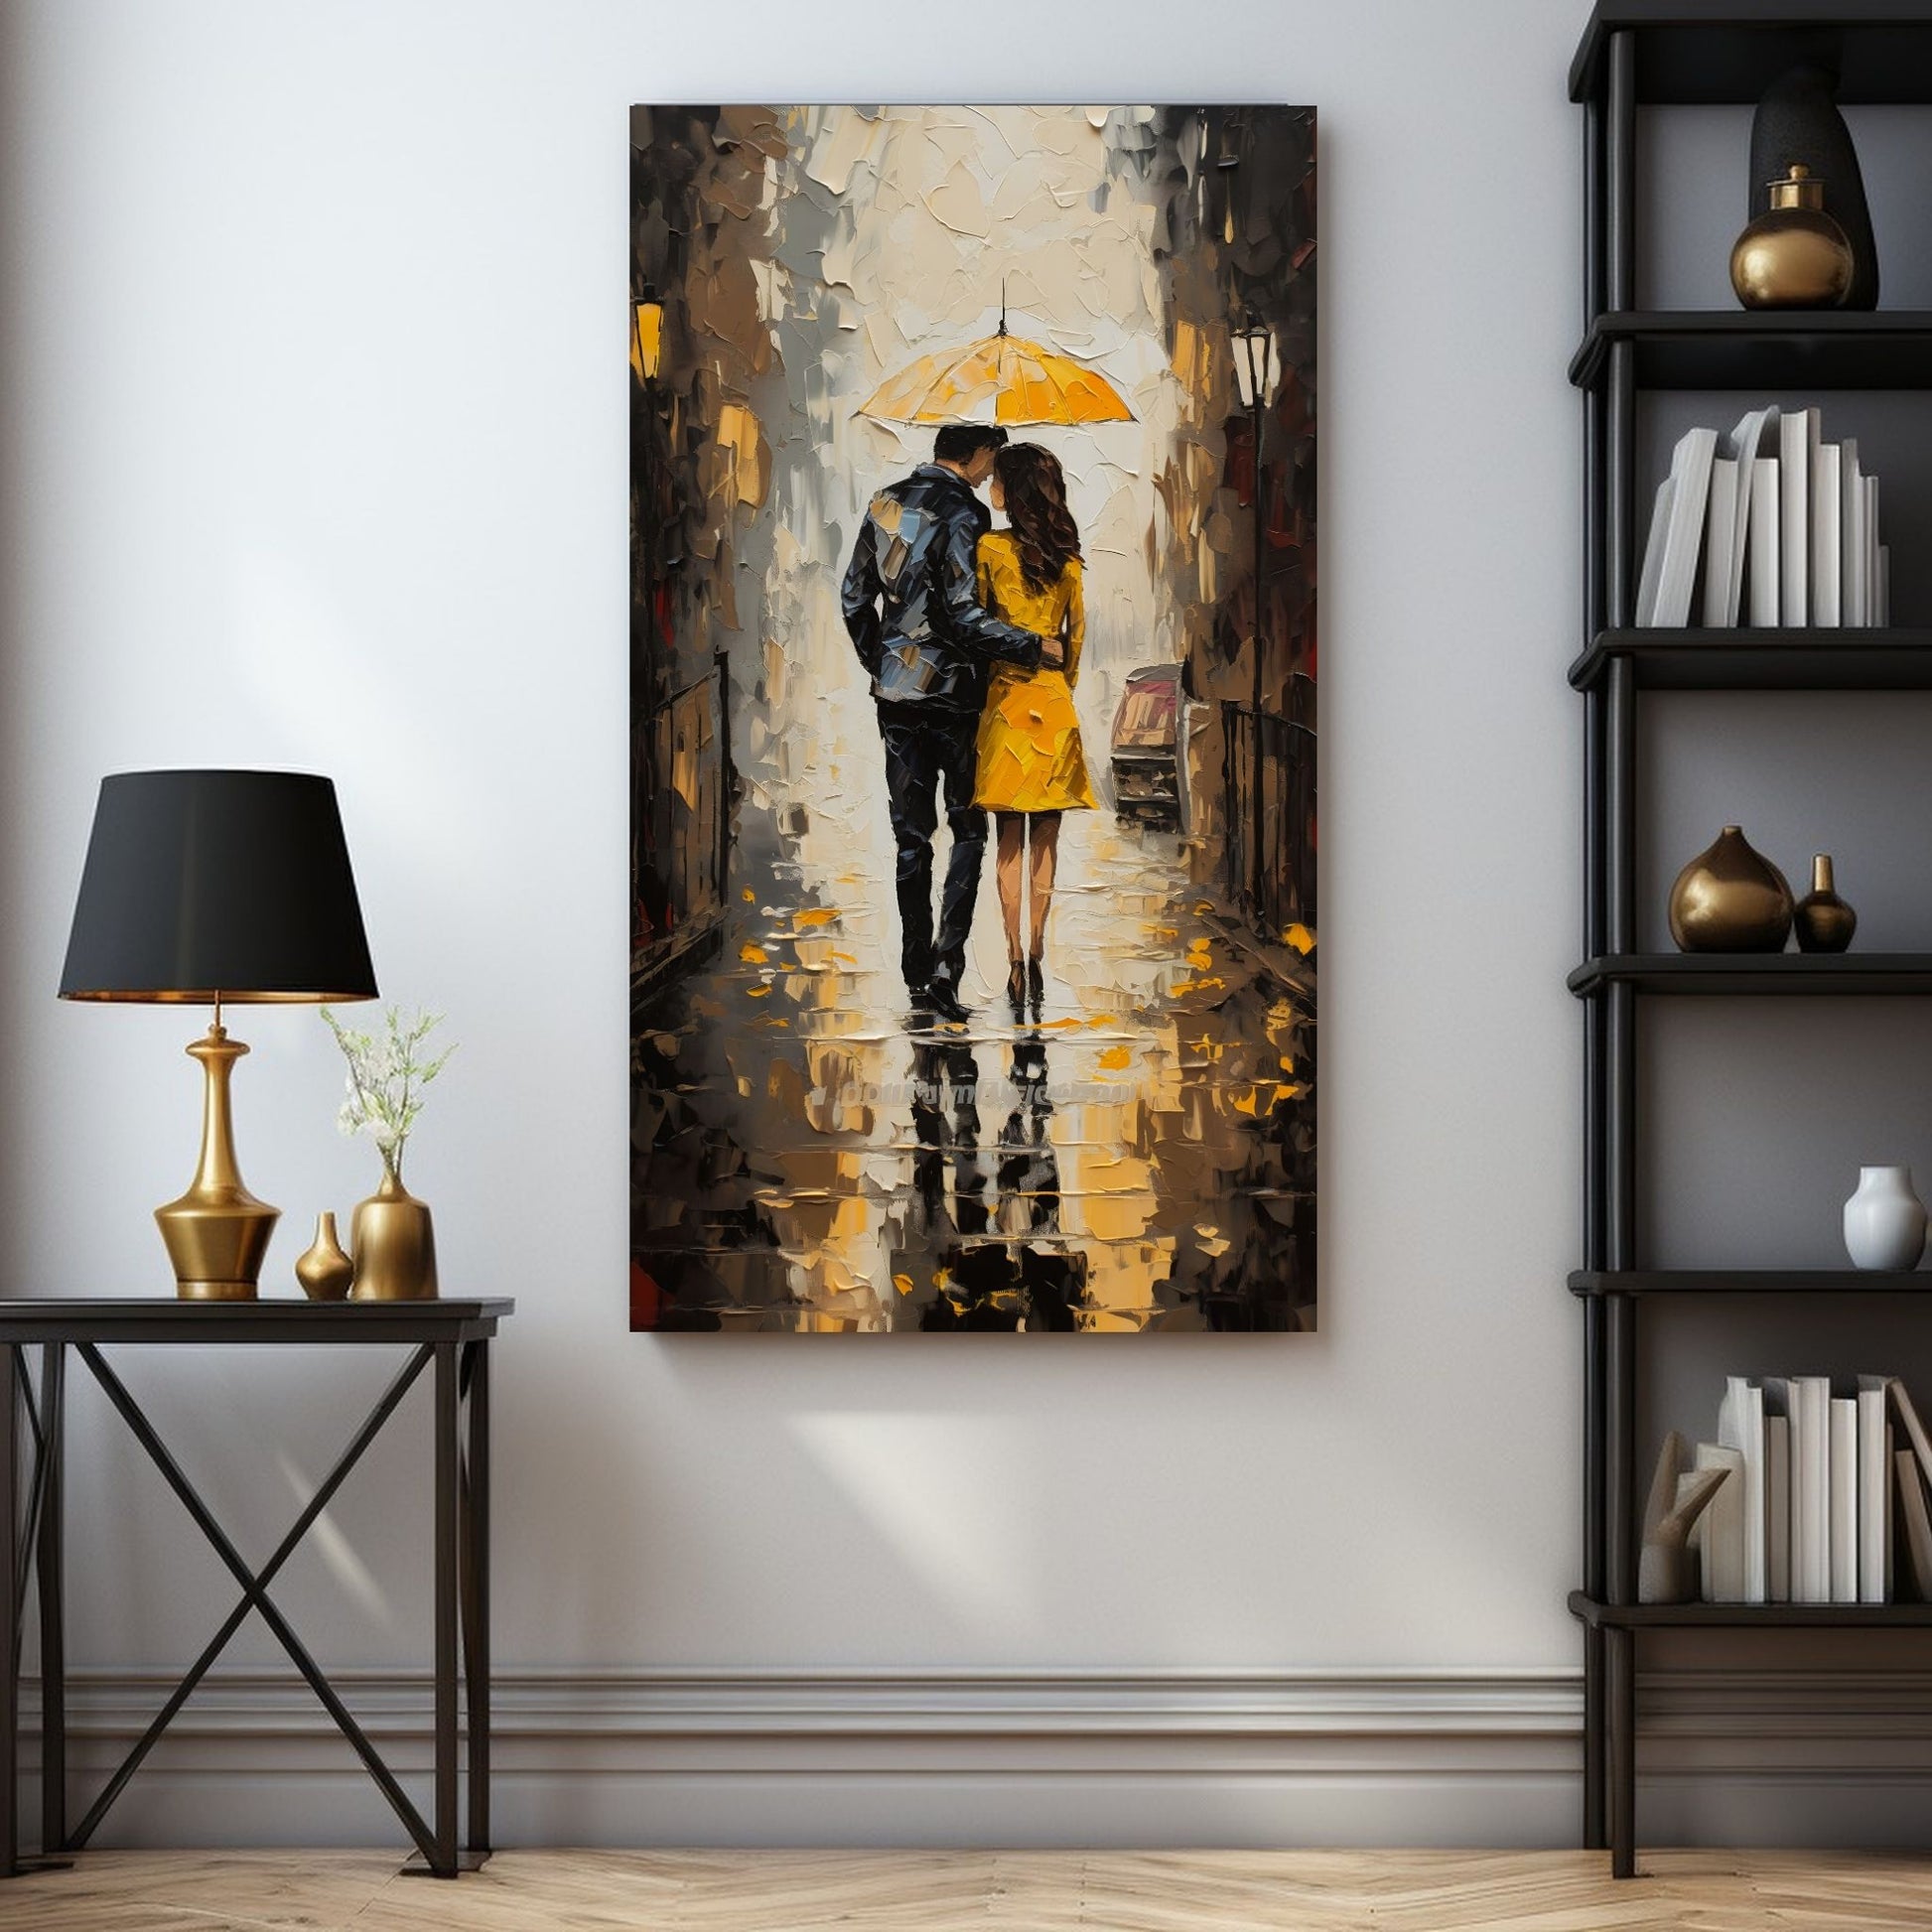 "Kjæresteparet under den gule paraplyen" - oljemaleri i grafisk trykk. Motiv av et par som går under en gul paraply langs en gate. Hun har en gul kåpe og han en sort dress. Miljøbildet viser motivet i lerret.